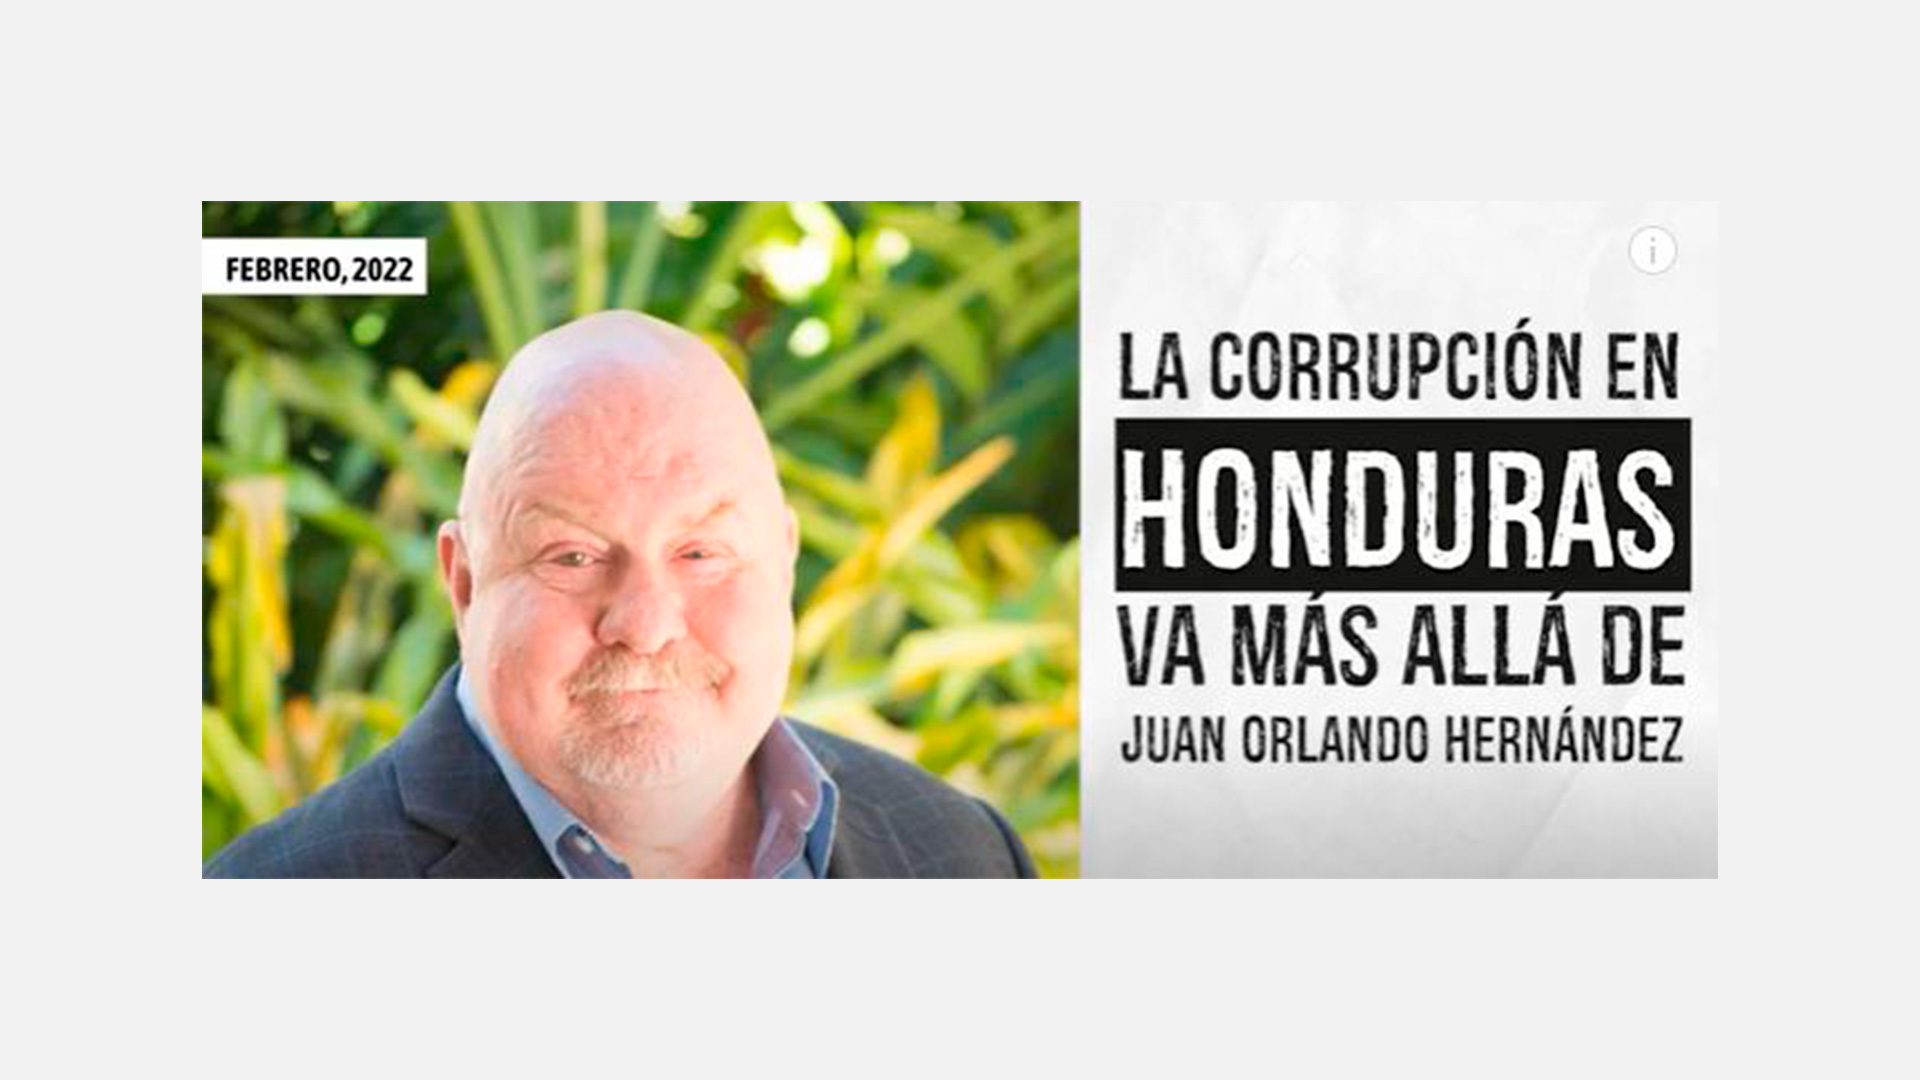 «La corrupción en Honduras va más allá de Juan Orlando Hernández»